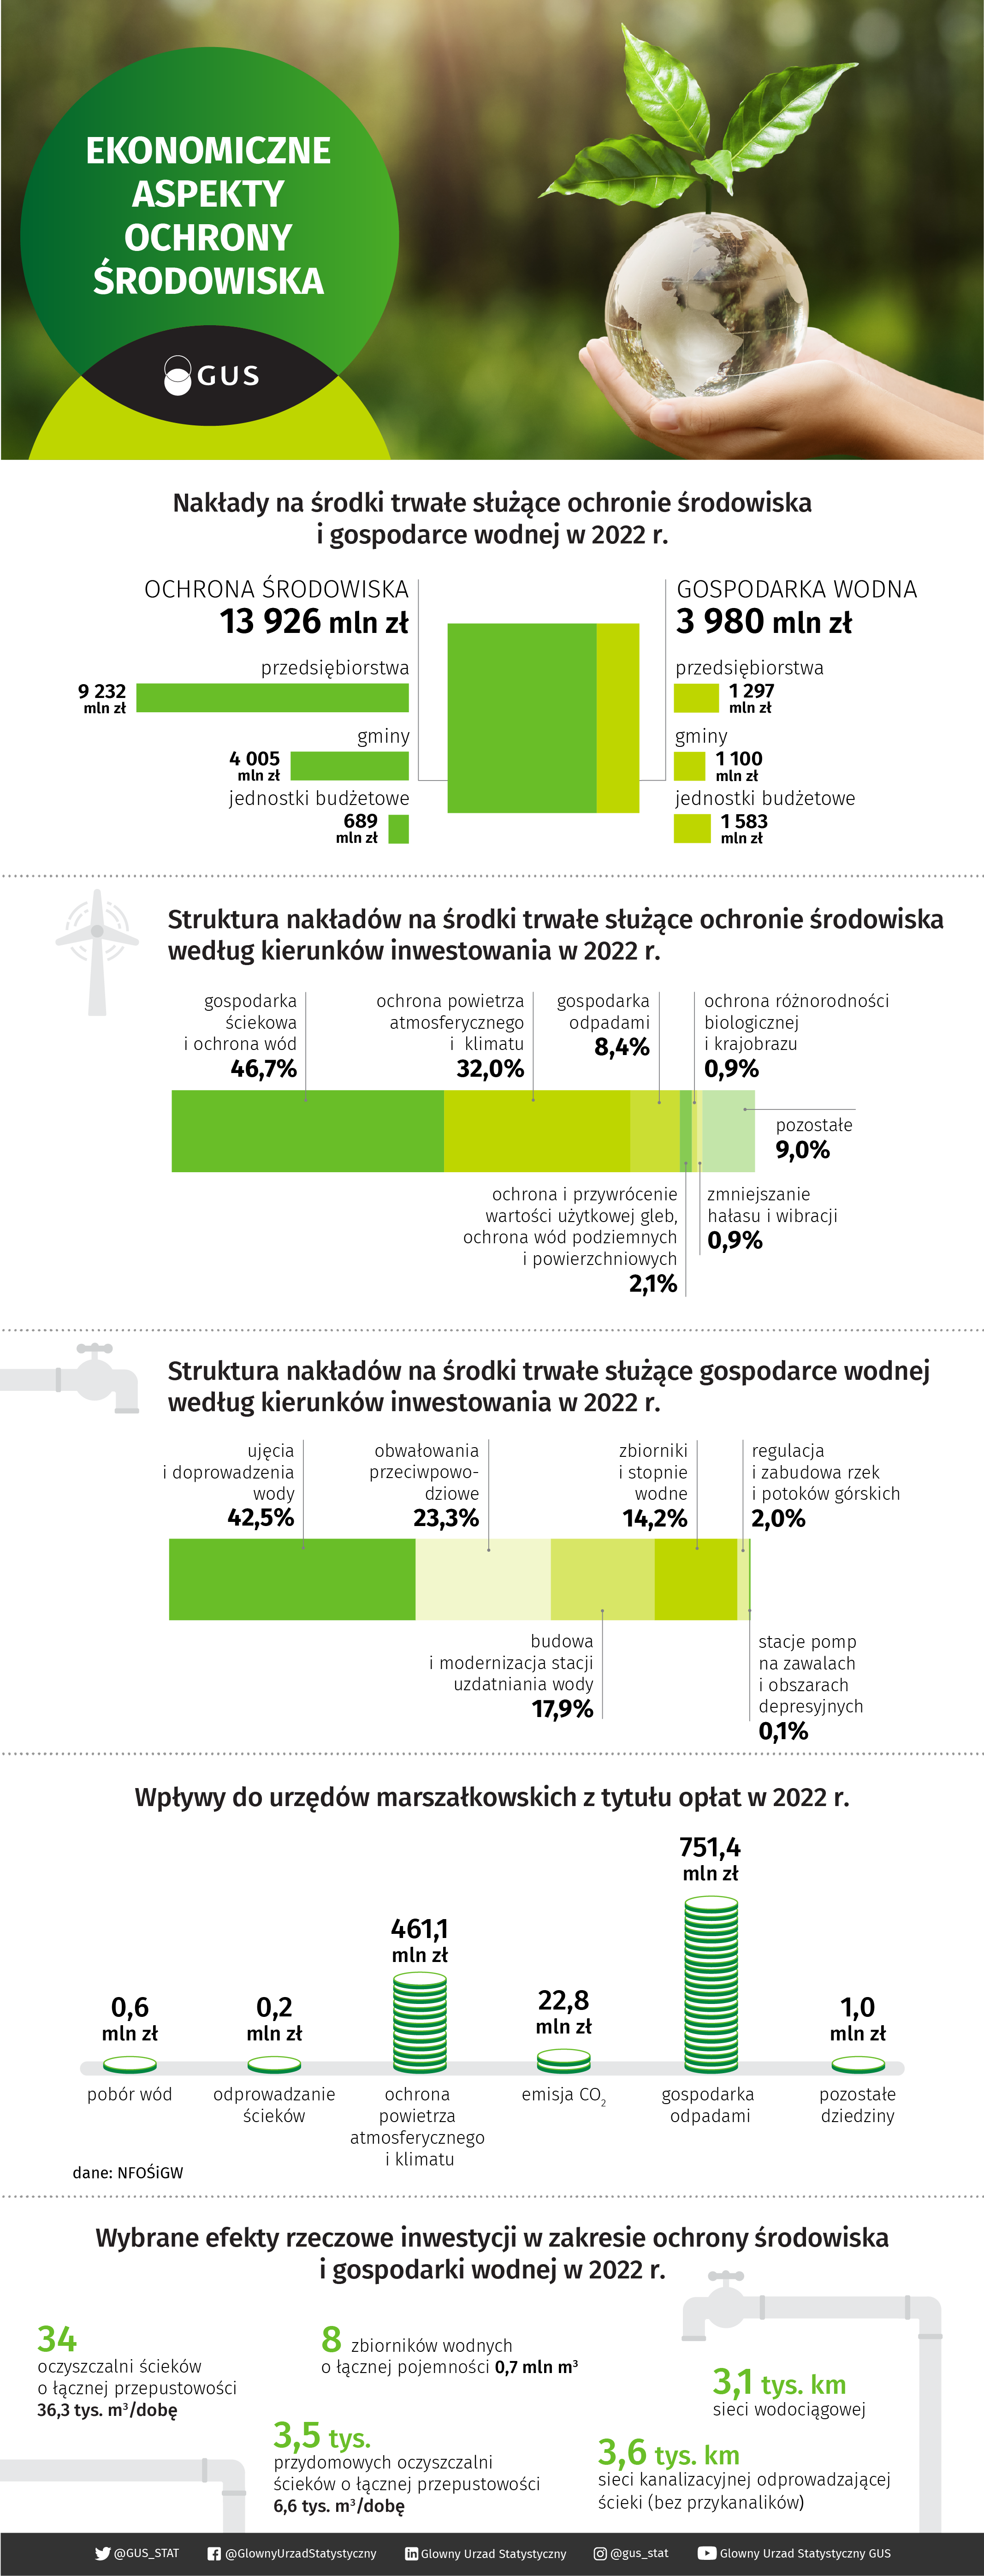 Infografika - Ekonomiczne aspekty ochrony środowiska w 2022 roku. Dane do infografiki znajdują się w załączonym poniżej pliku Excel